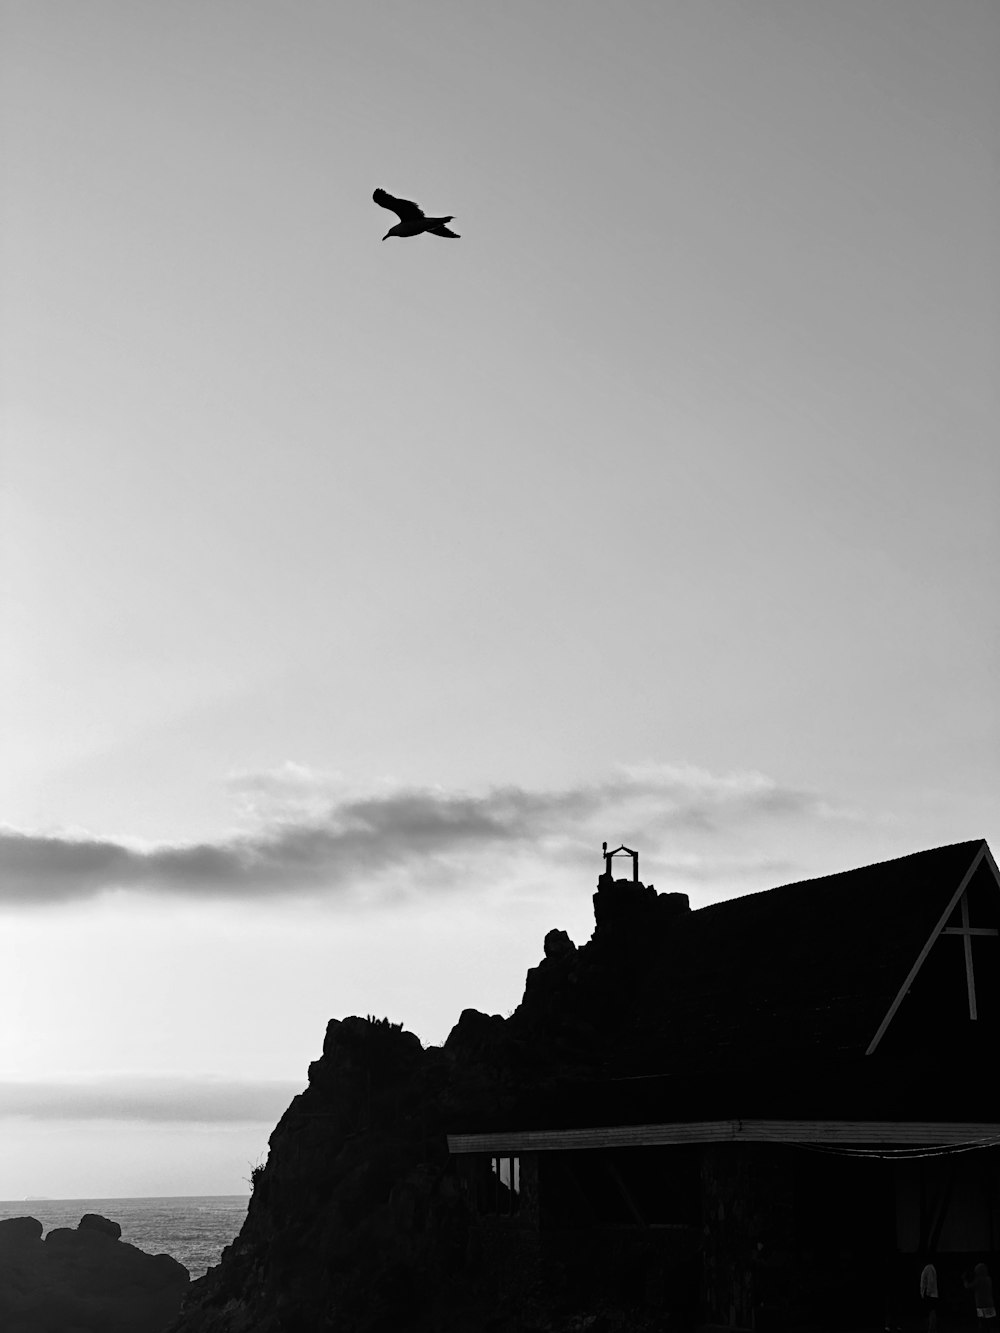 Una foto in bianco e nero di un uccello che vola sopra una casa